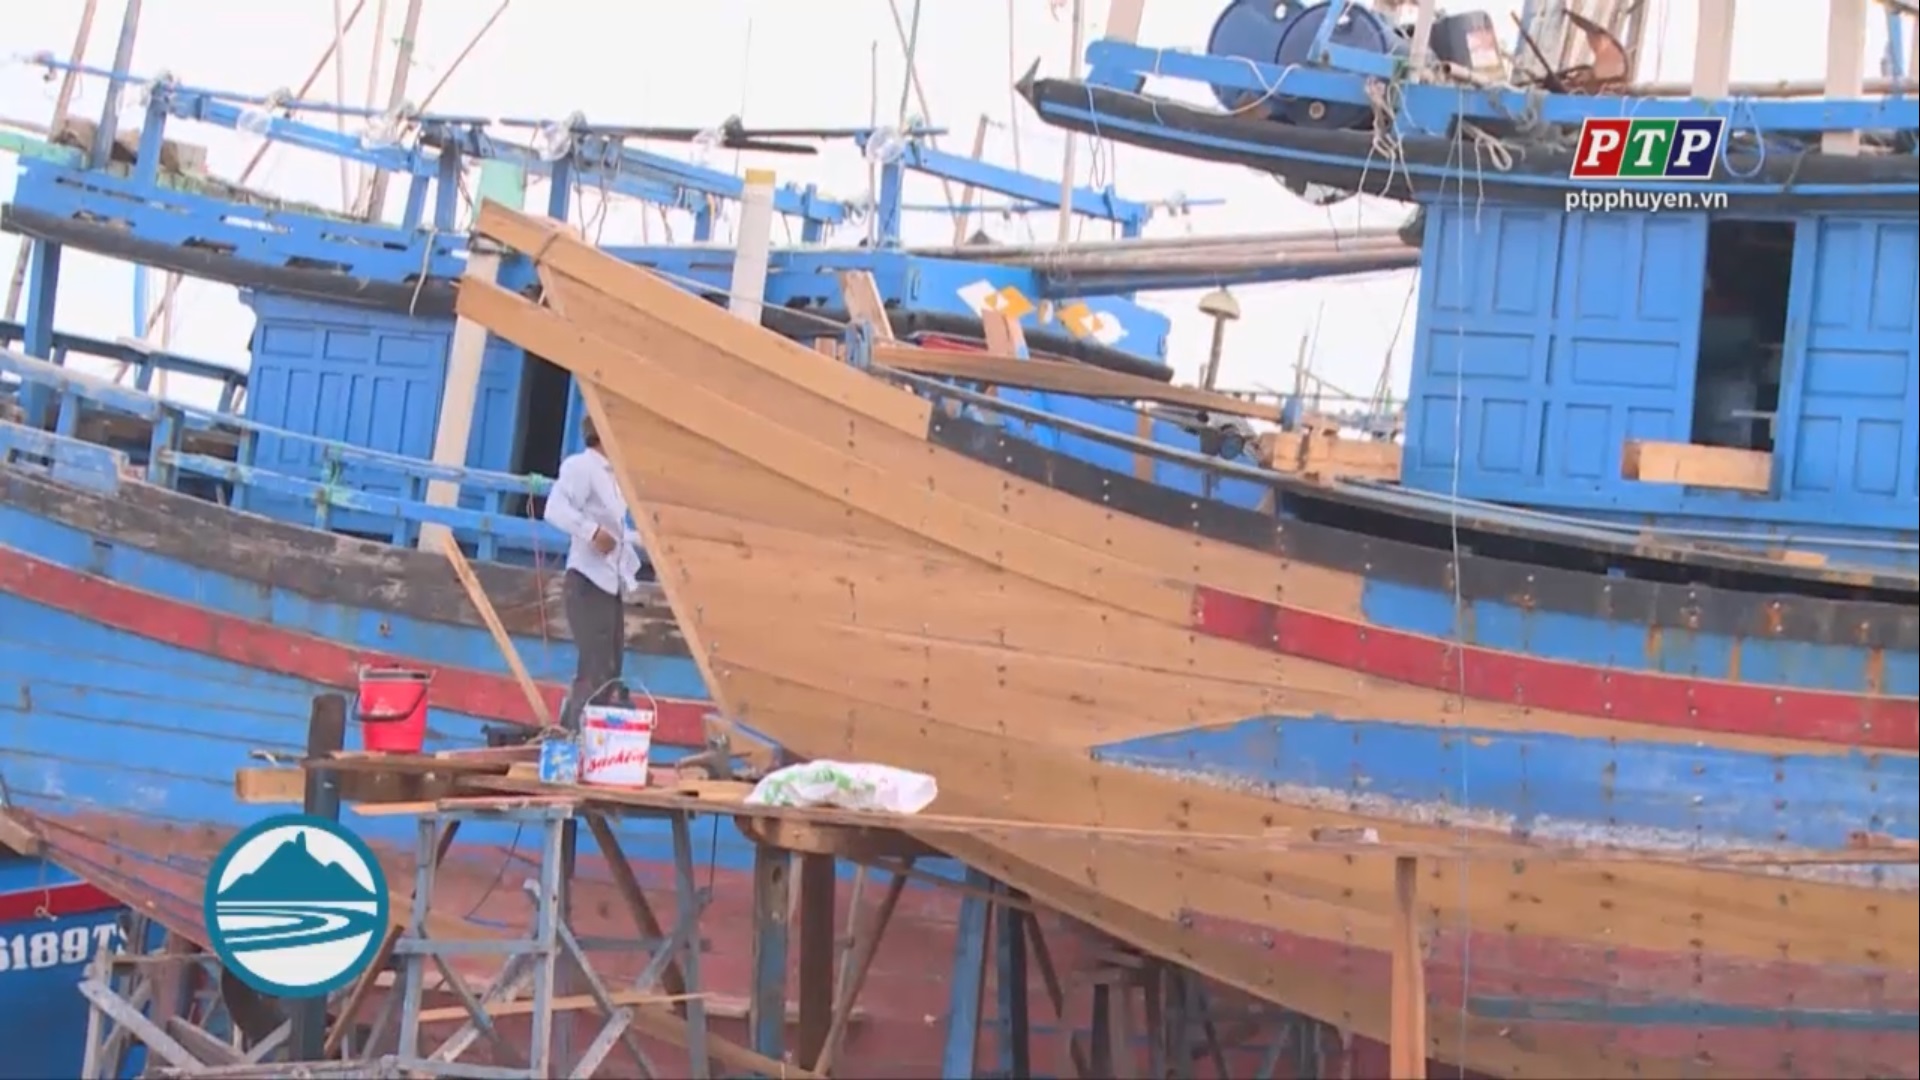 Rủi ro khi ngư dân tự phát cải hoán tàu cá dưới 15m